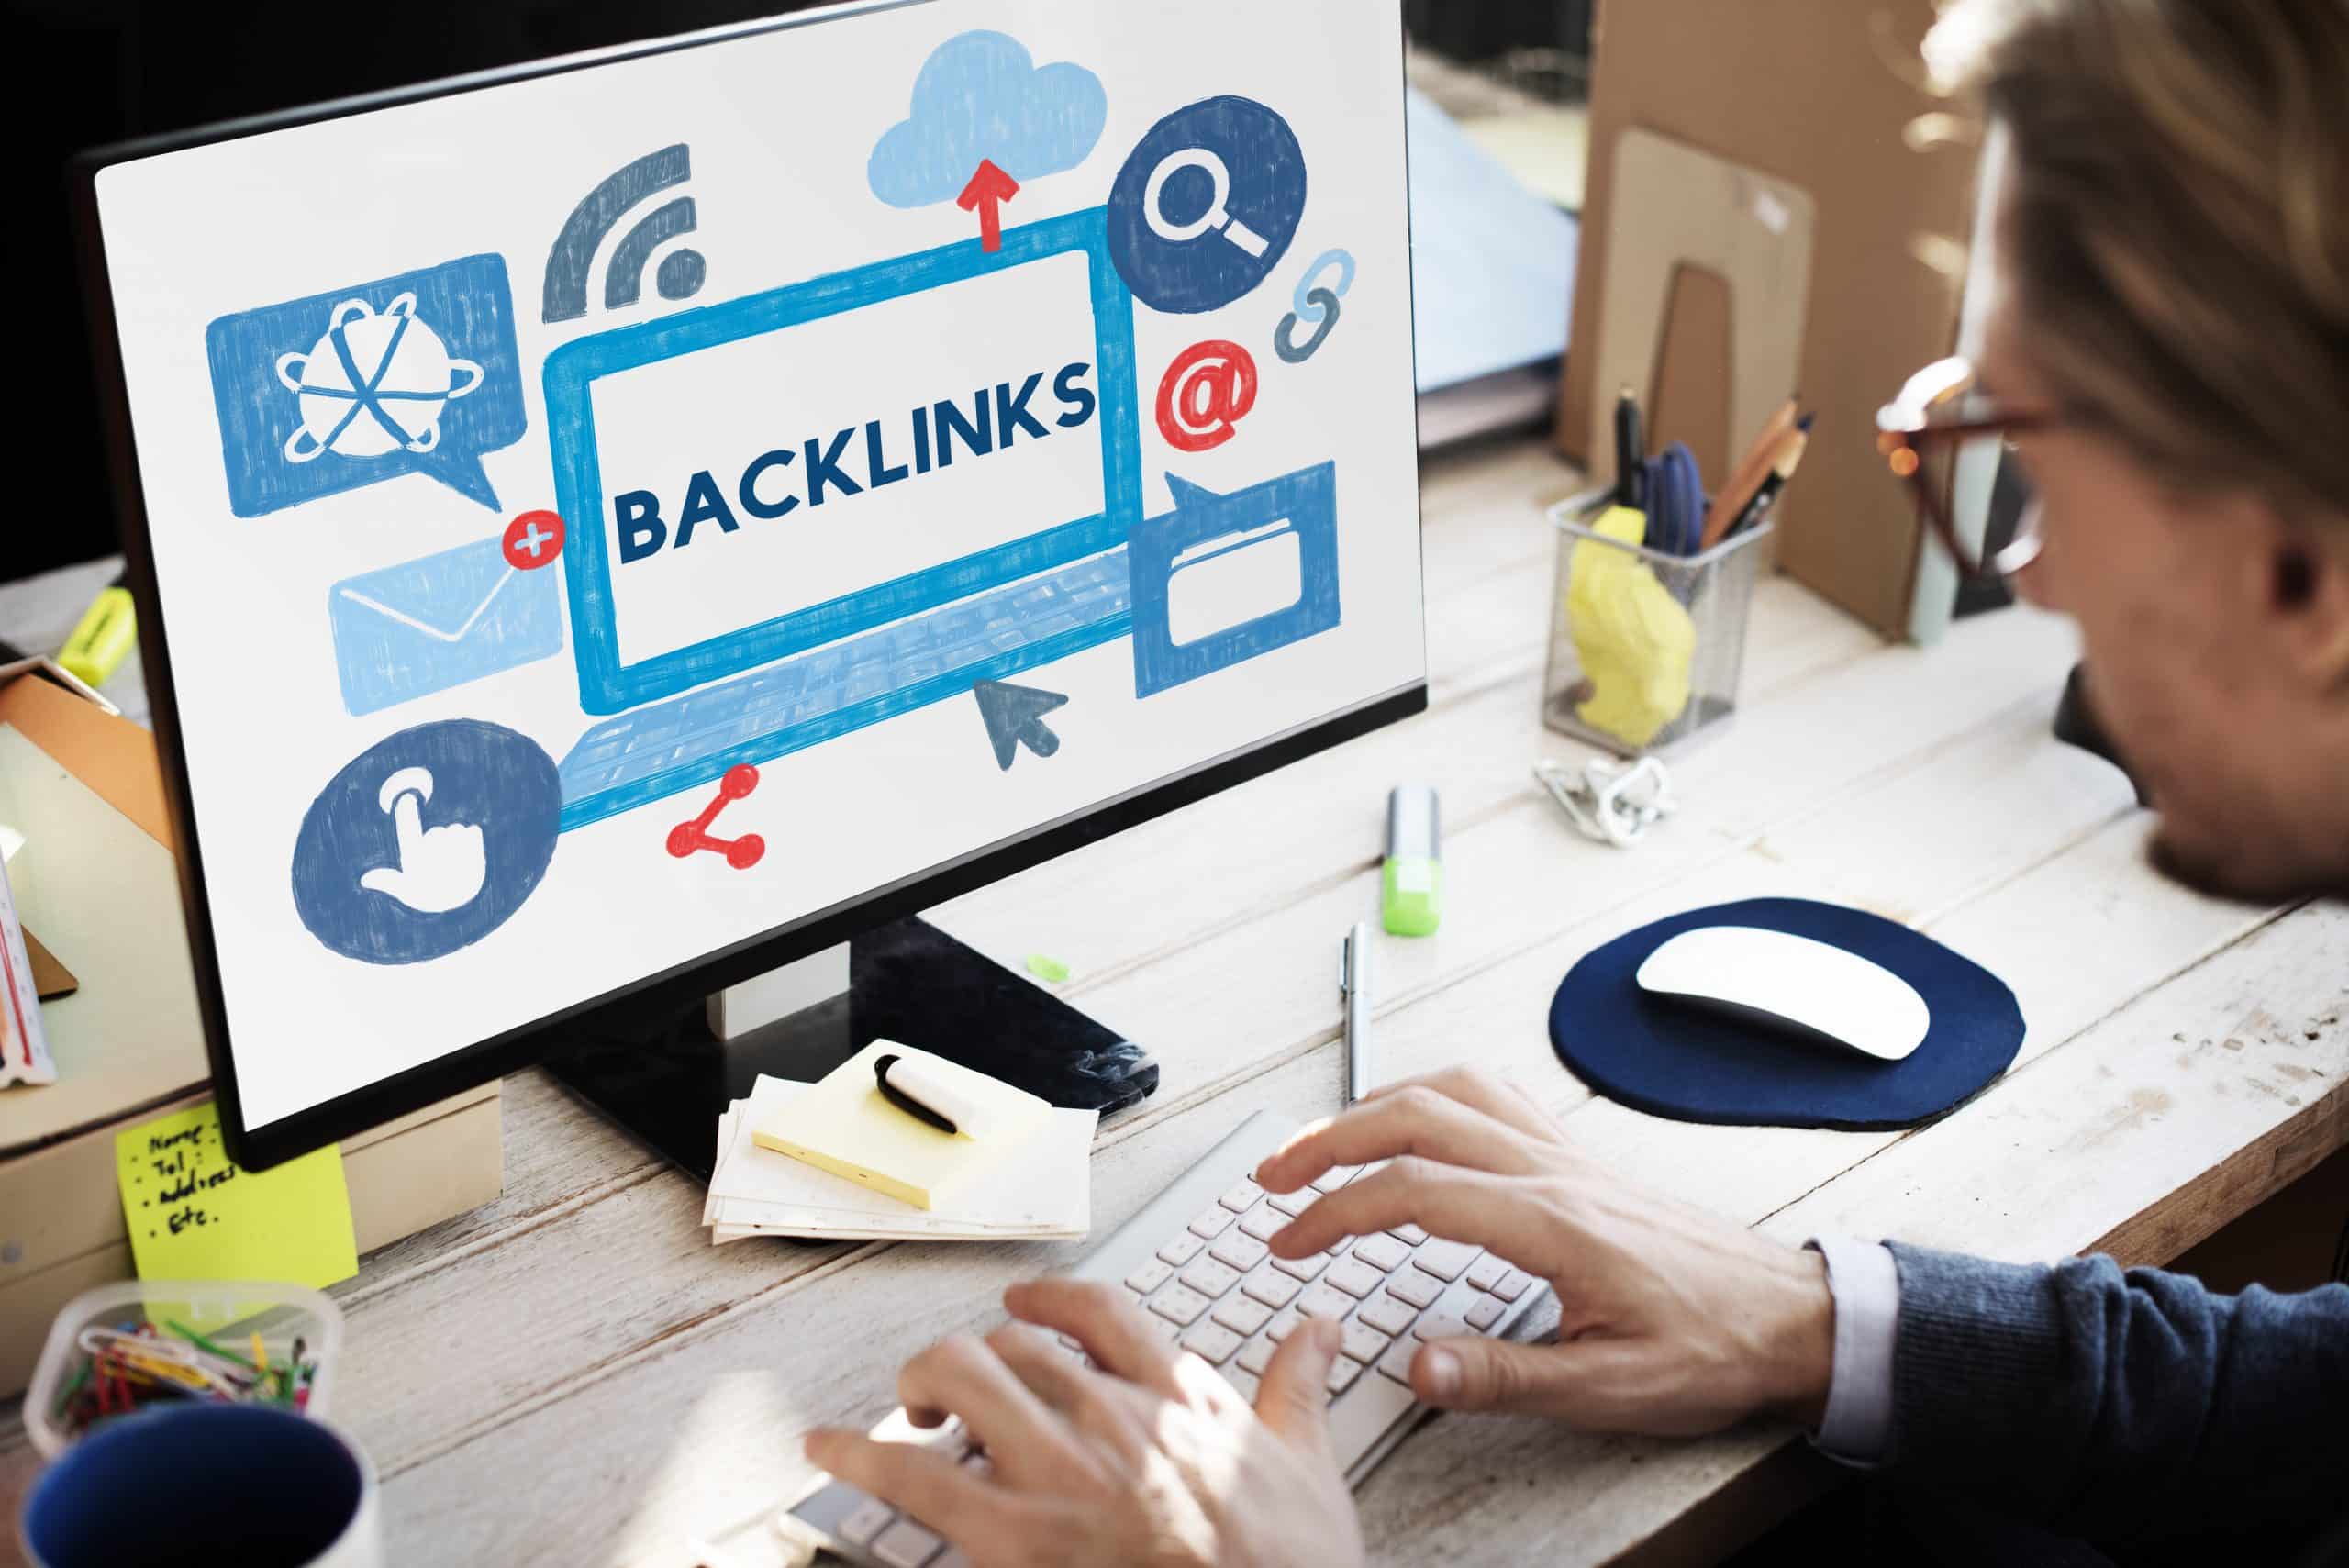 Como conseguir backlinks com inteligência artificial?